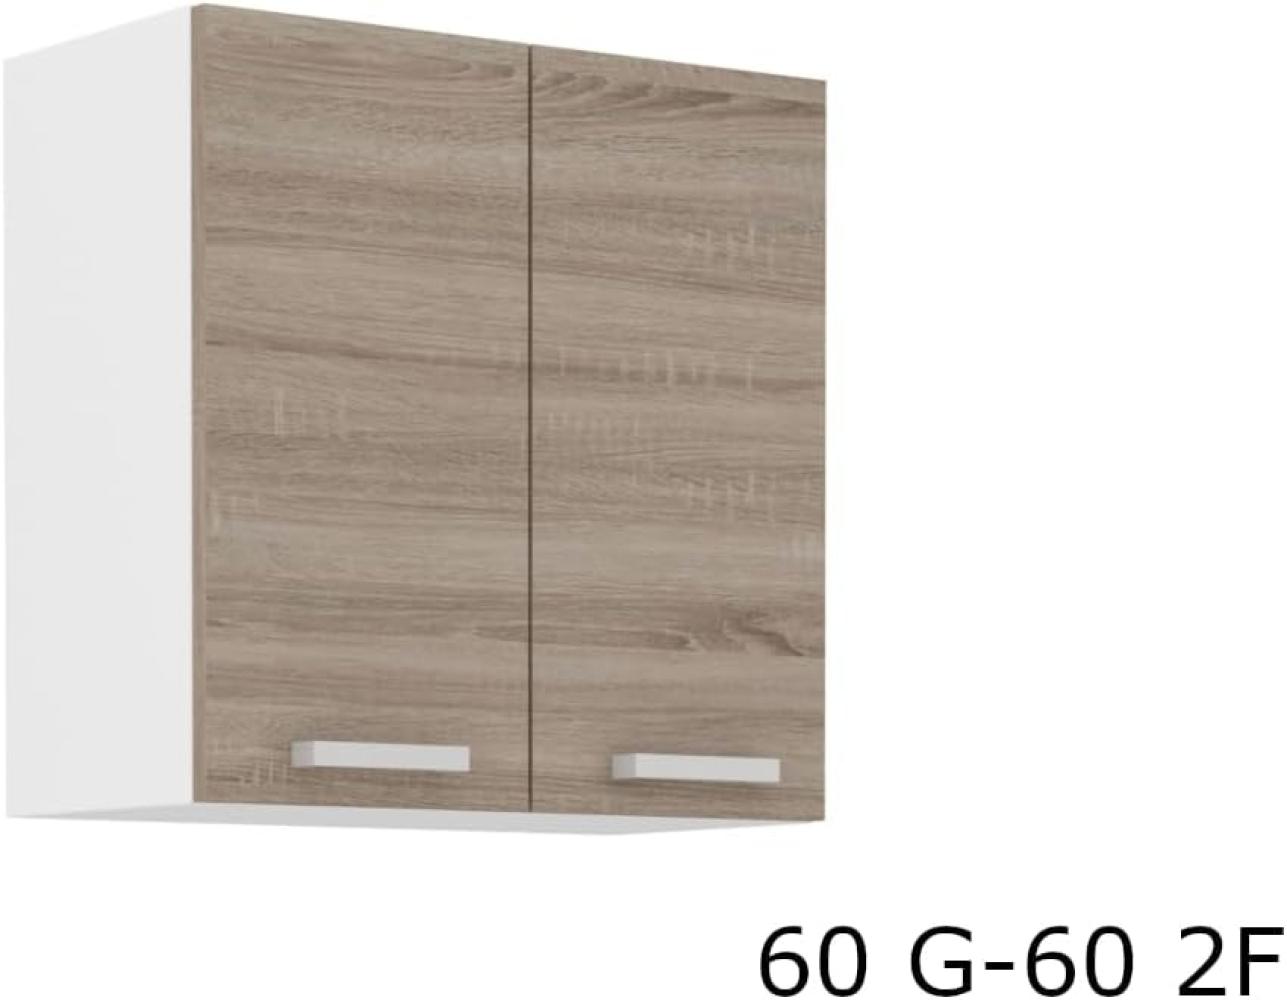 Zweitüriger Küchenoberschrank SOPHIA 60 G-60 2F, 60x60x31, weiß/Sonoma Eiche Trüffel Bild 1